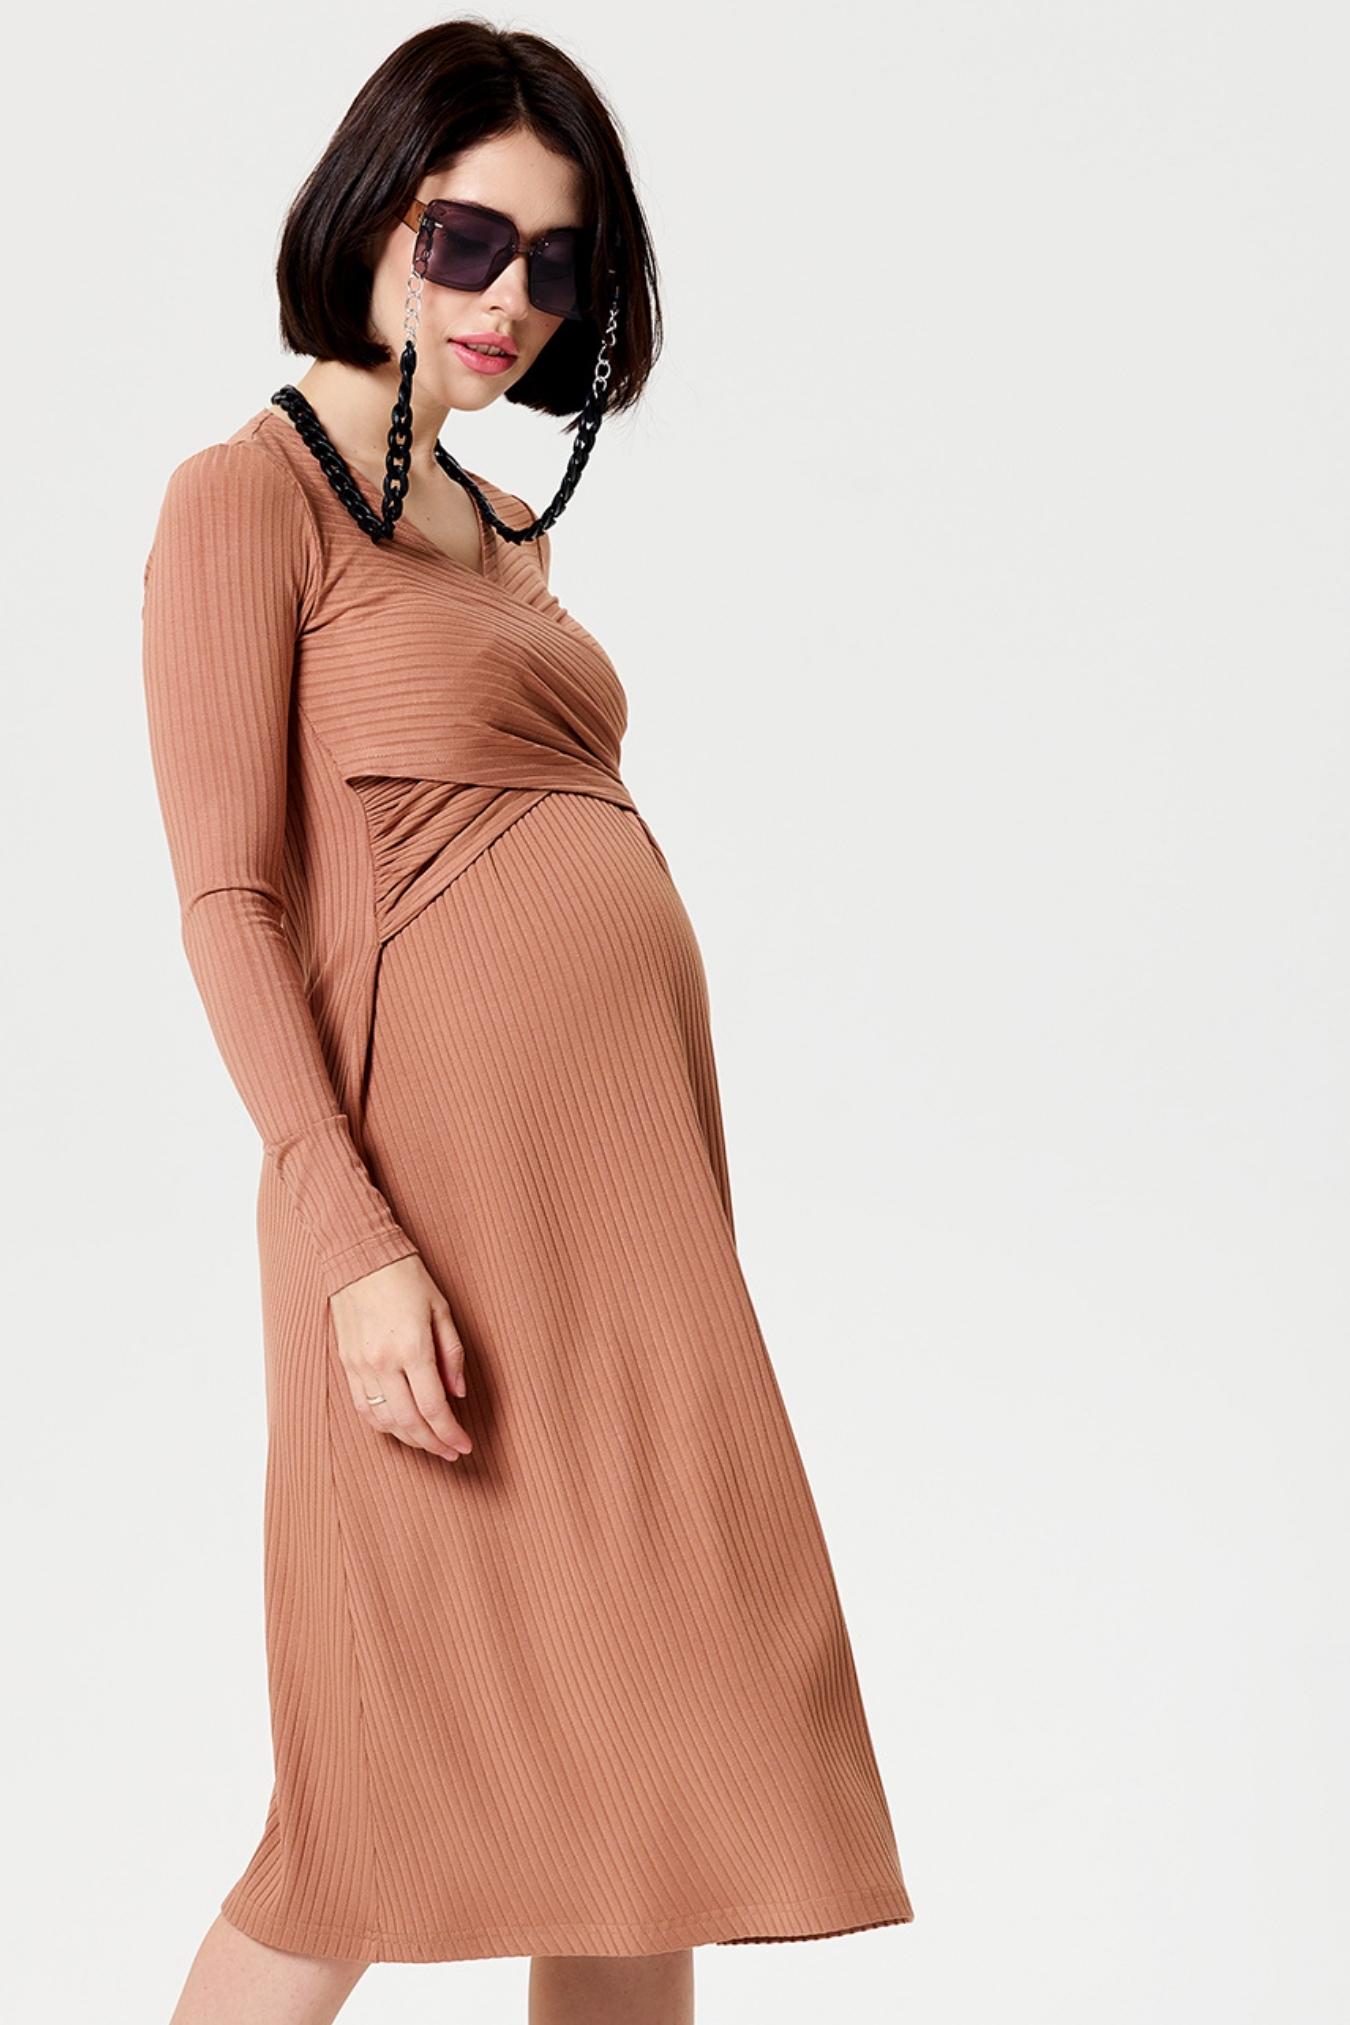 Платье для беременных и кормящих Happy Moms